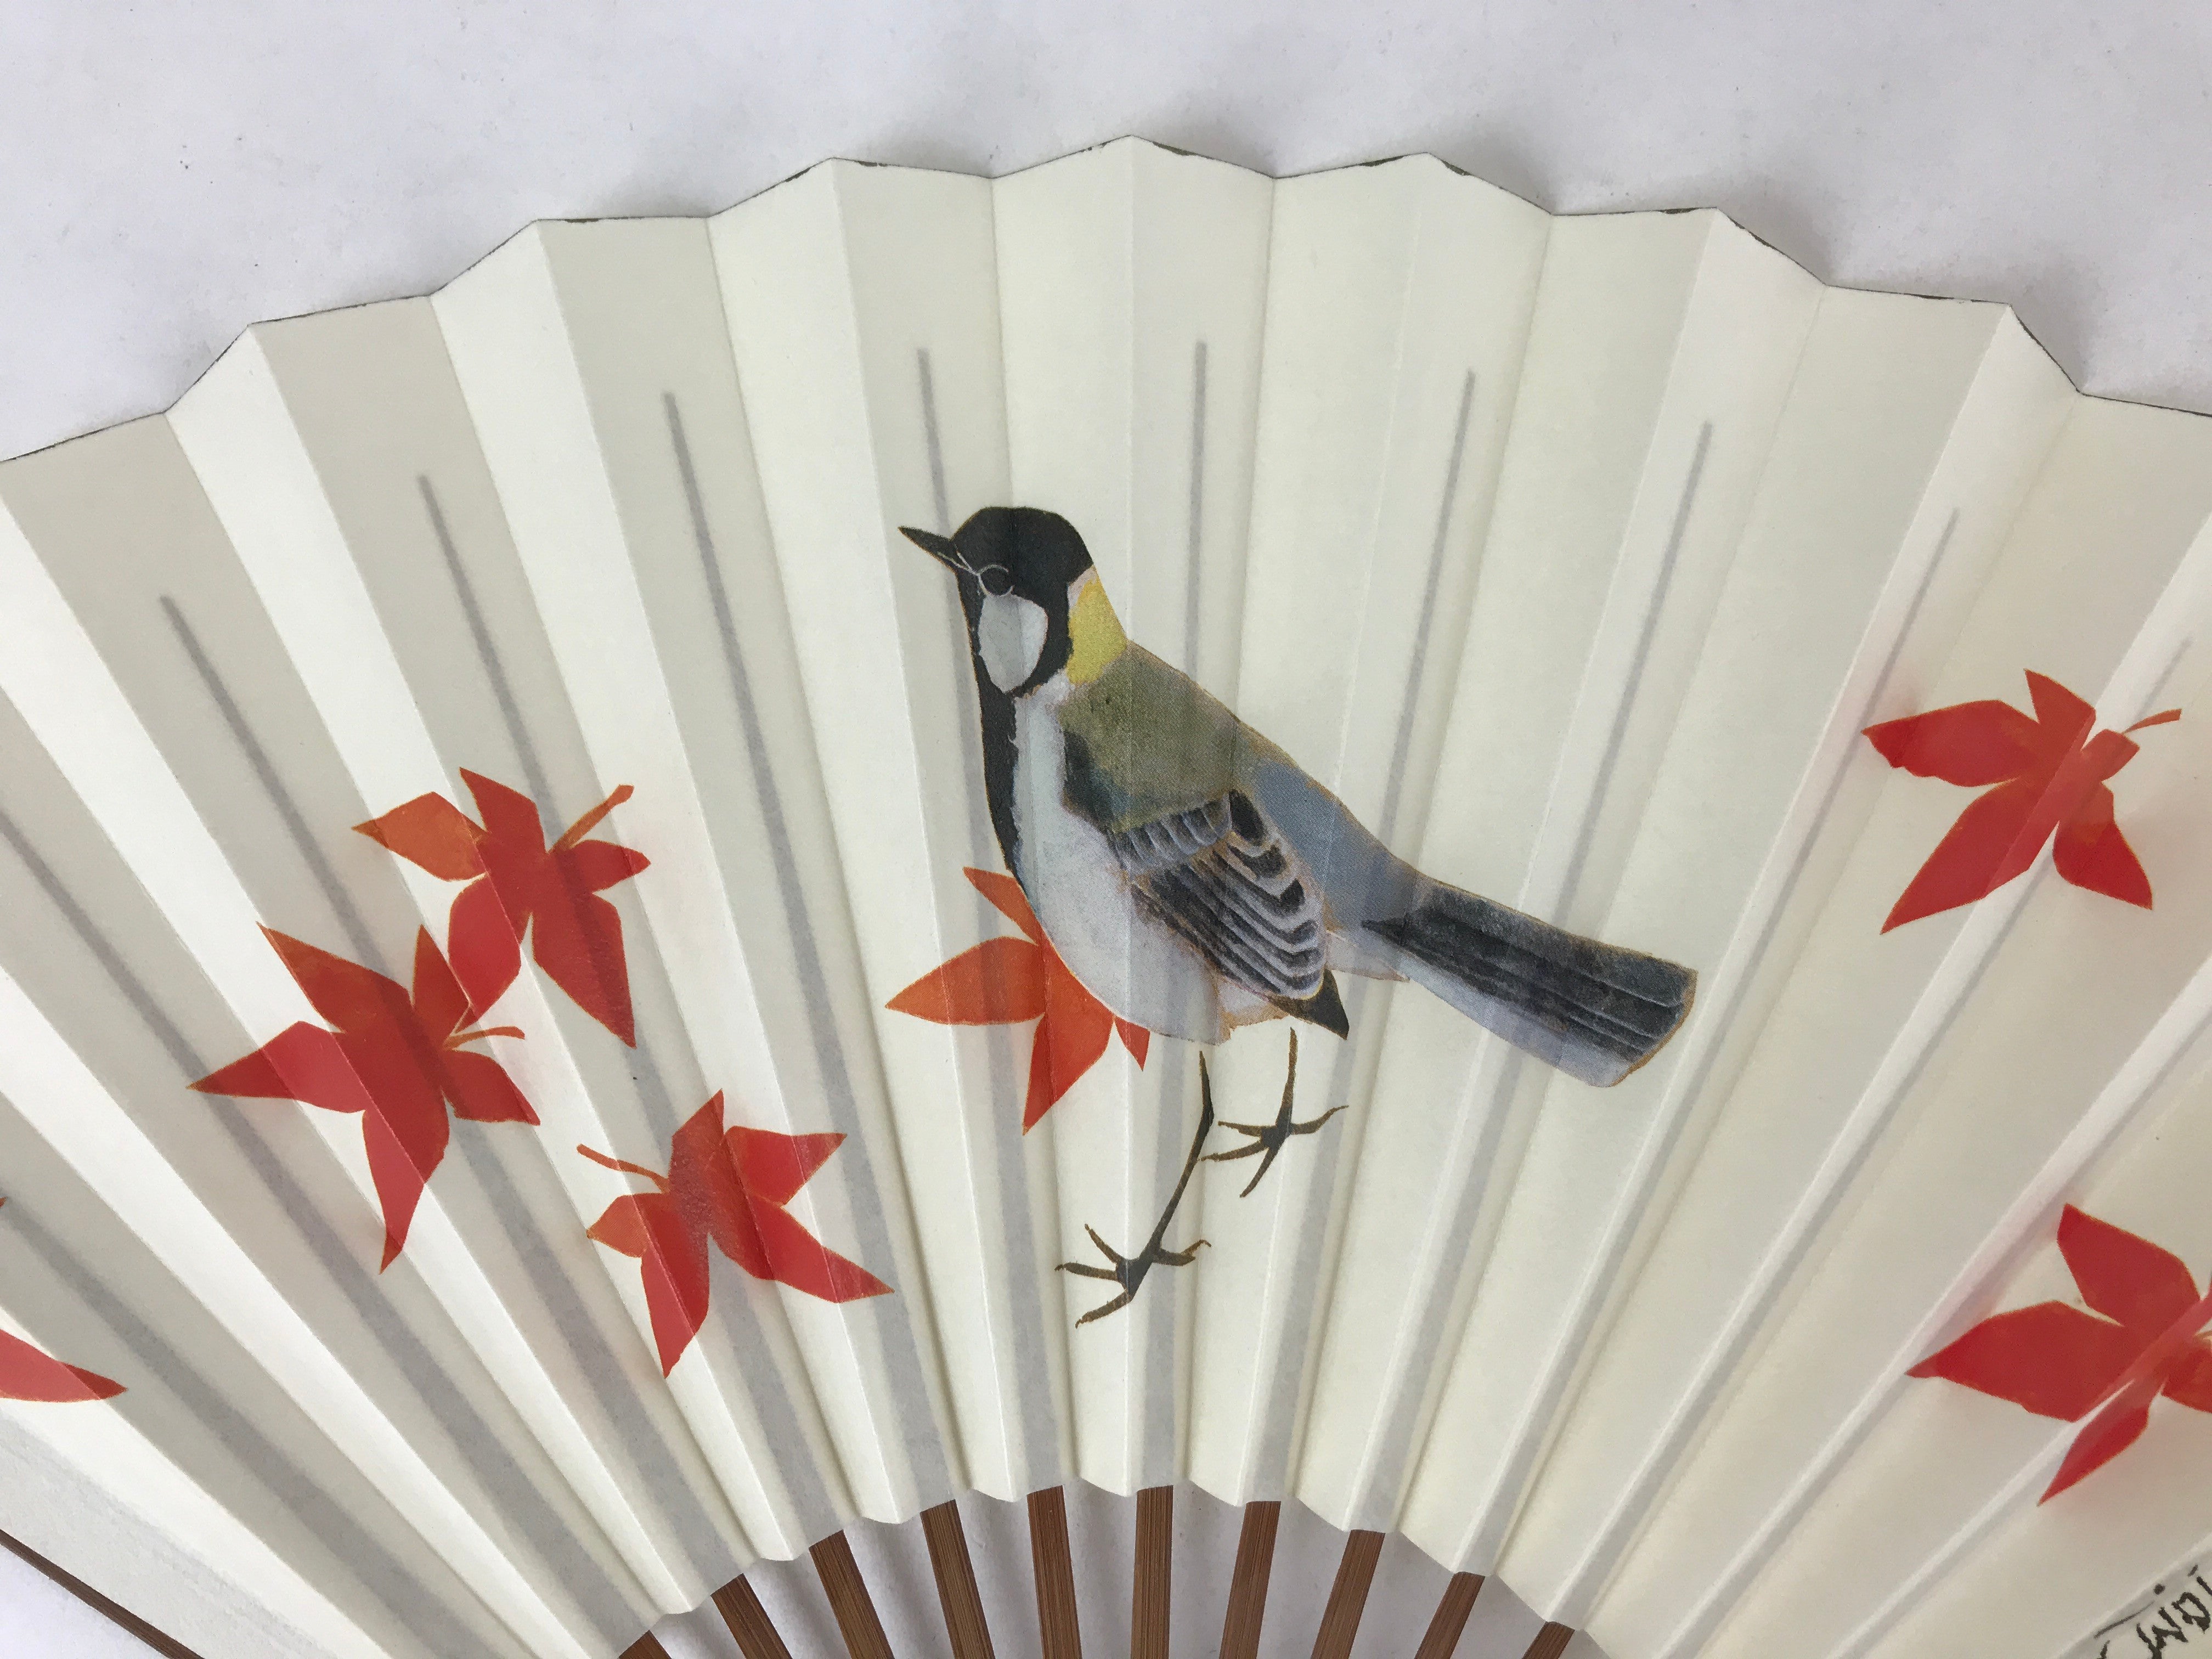 Japanese Paper Folding Fan Sensu Bamboo Frame Bird Momiji Higashi Honganji 4D785